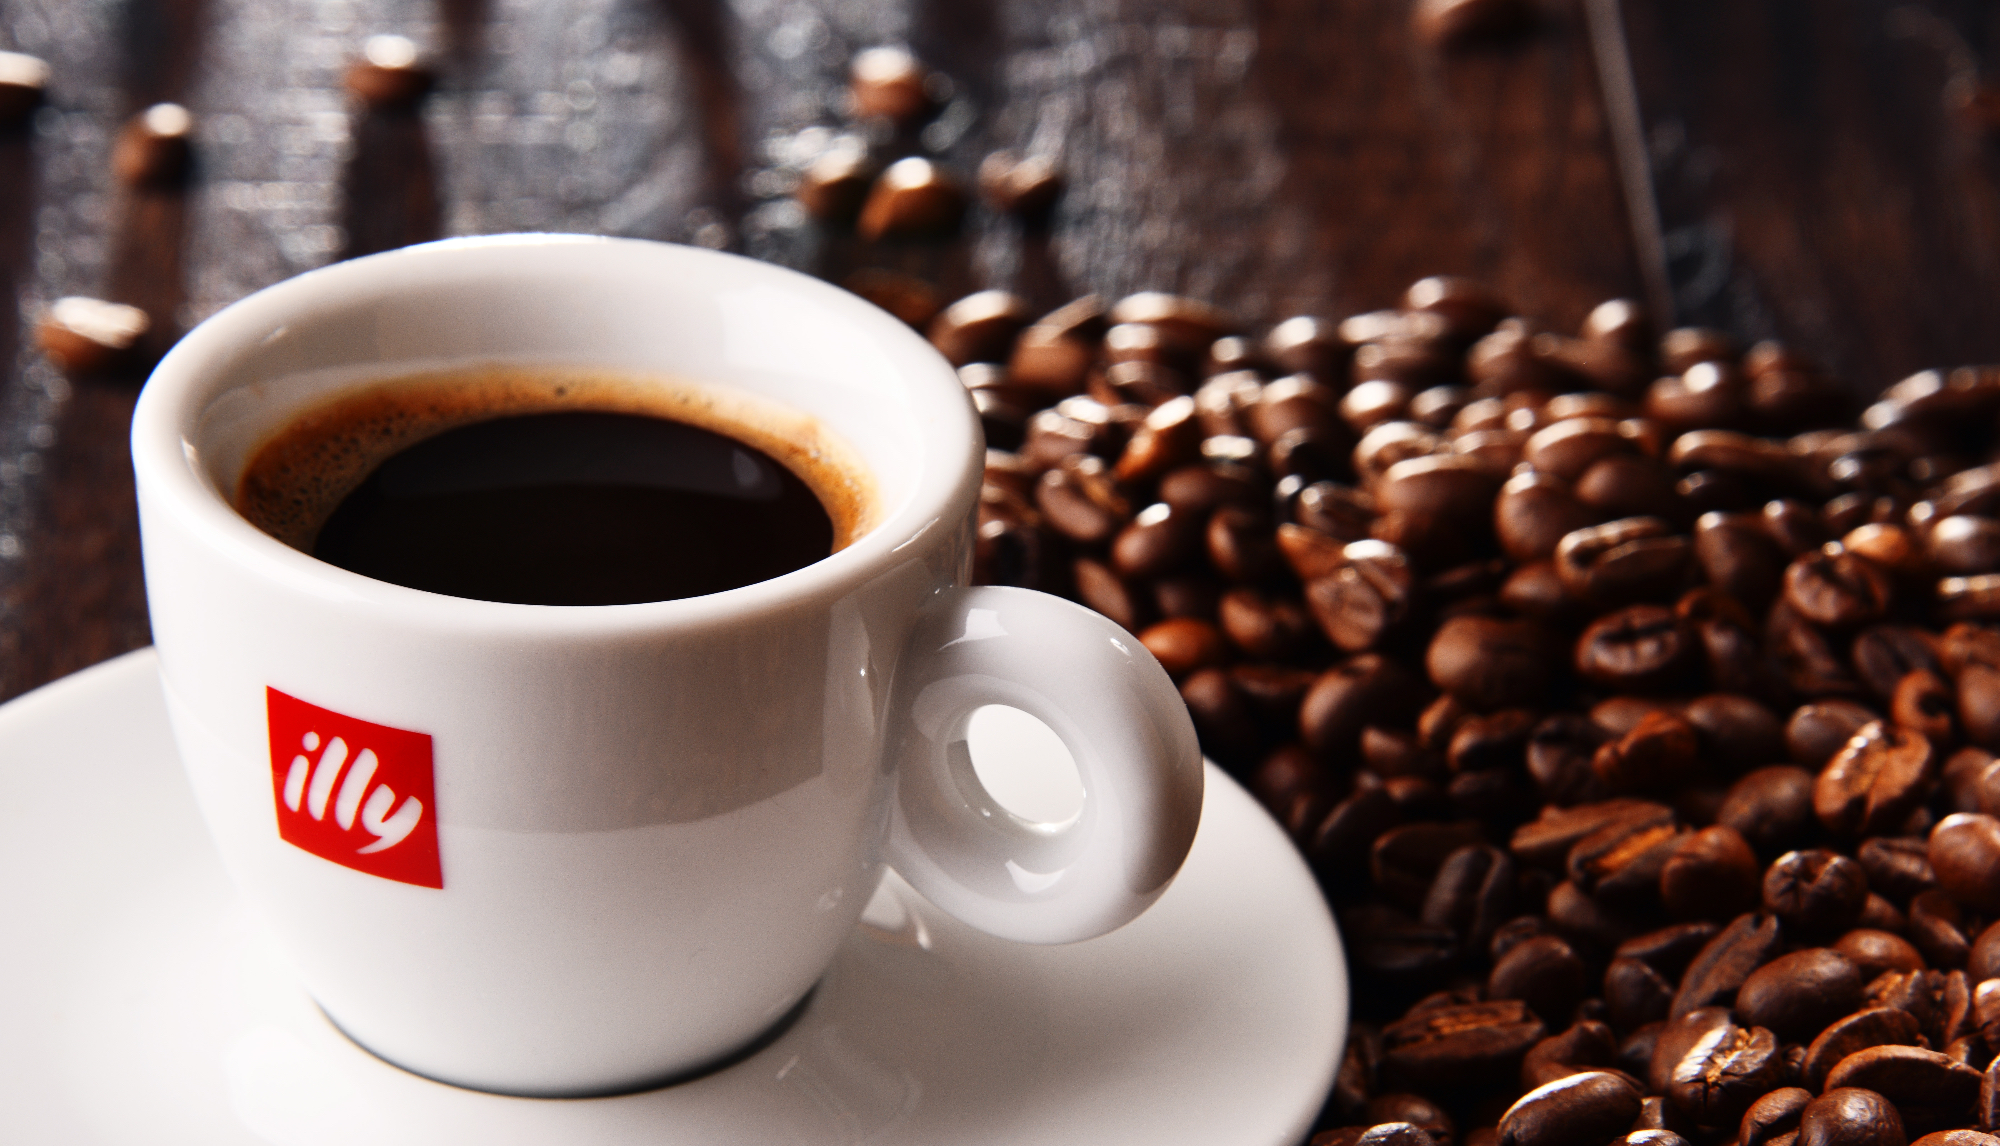 Illy: Povijest i utjecaj na industriju kave